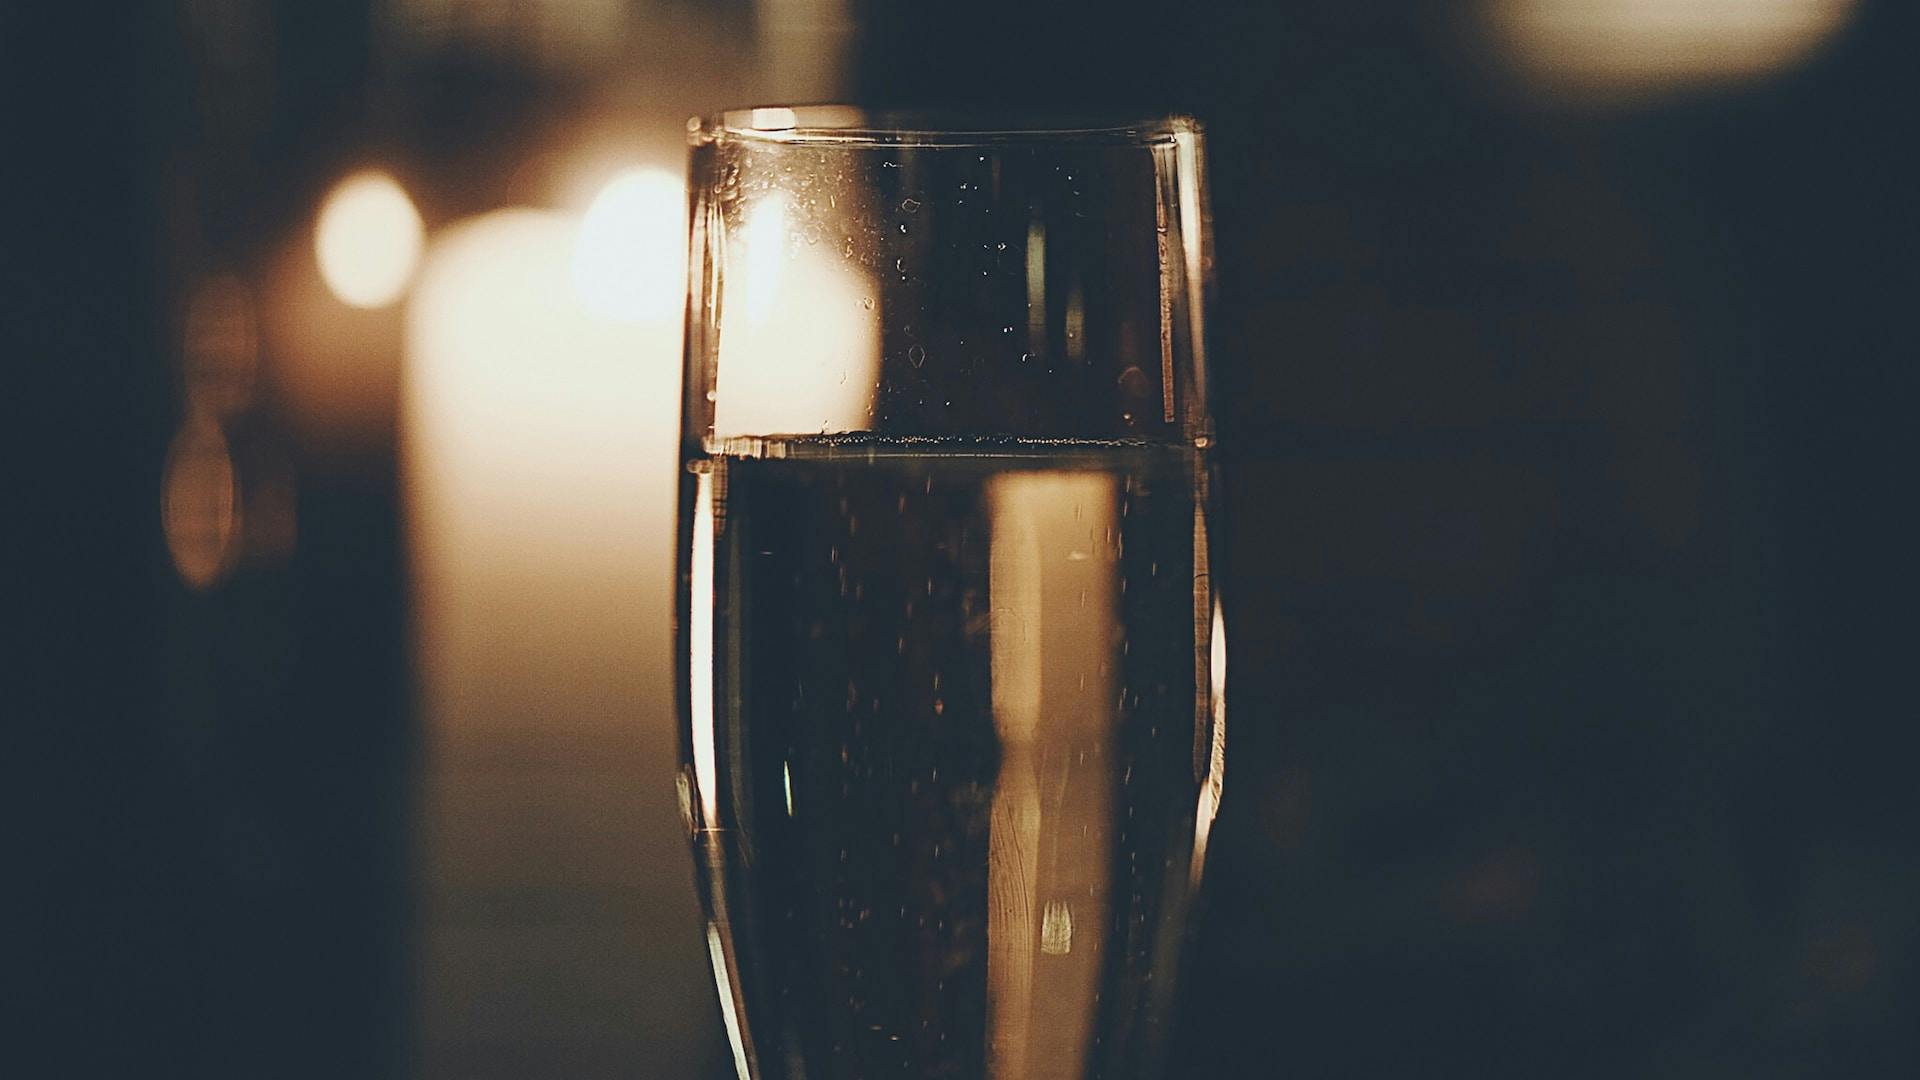 Dunkler Hintergrund wo Champagnerglas steht mit gelber Flüssigkeit drinnen